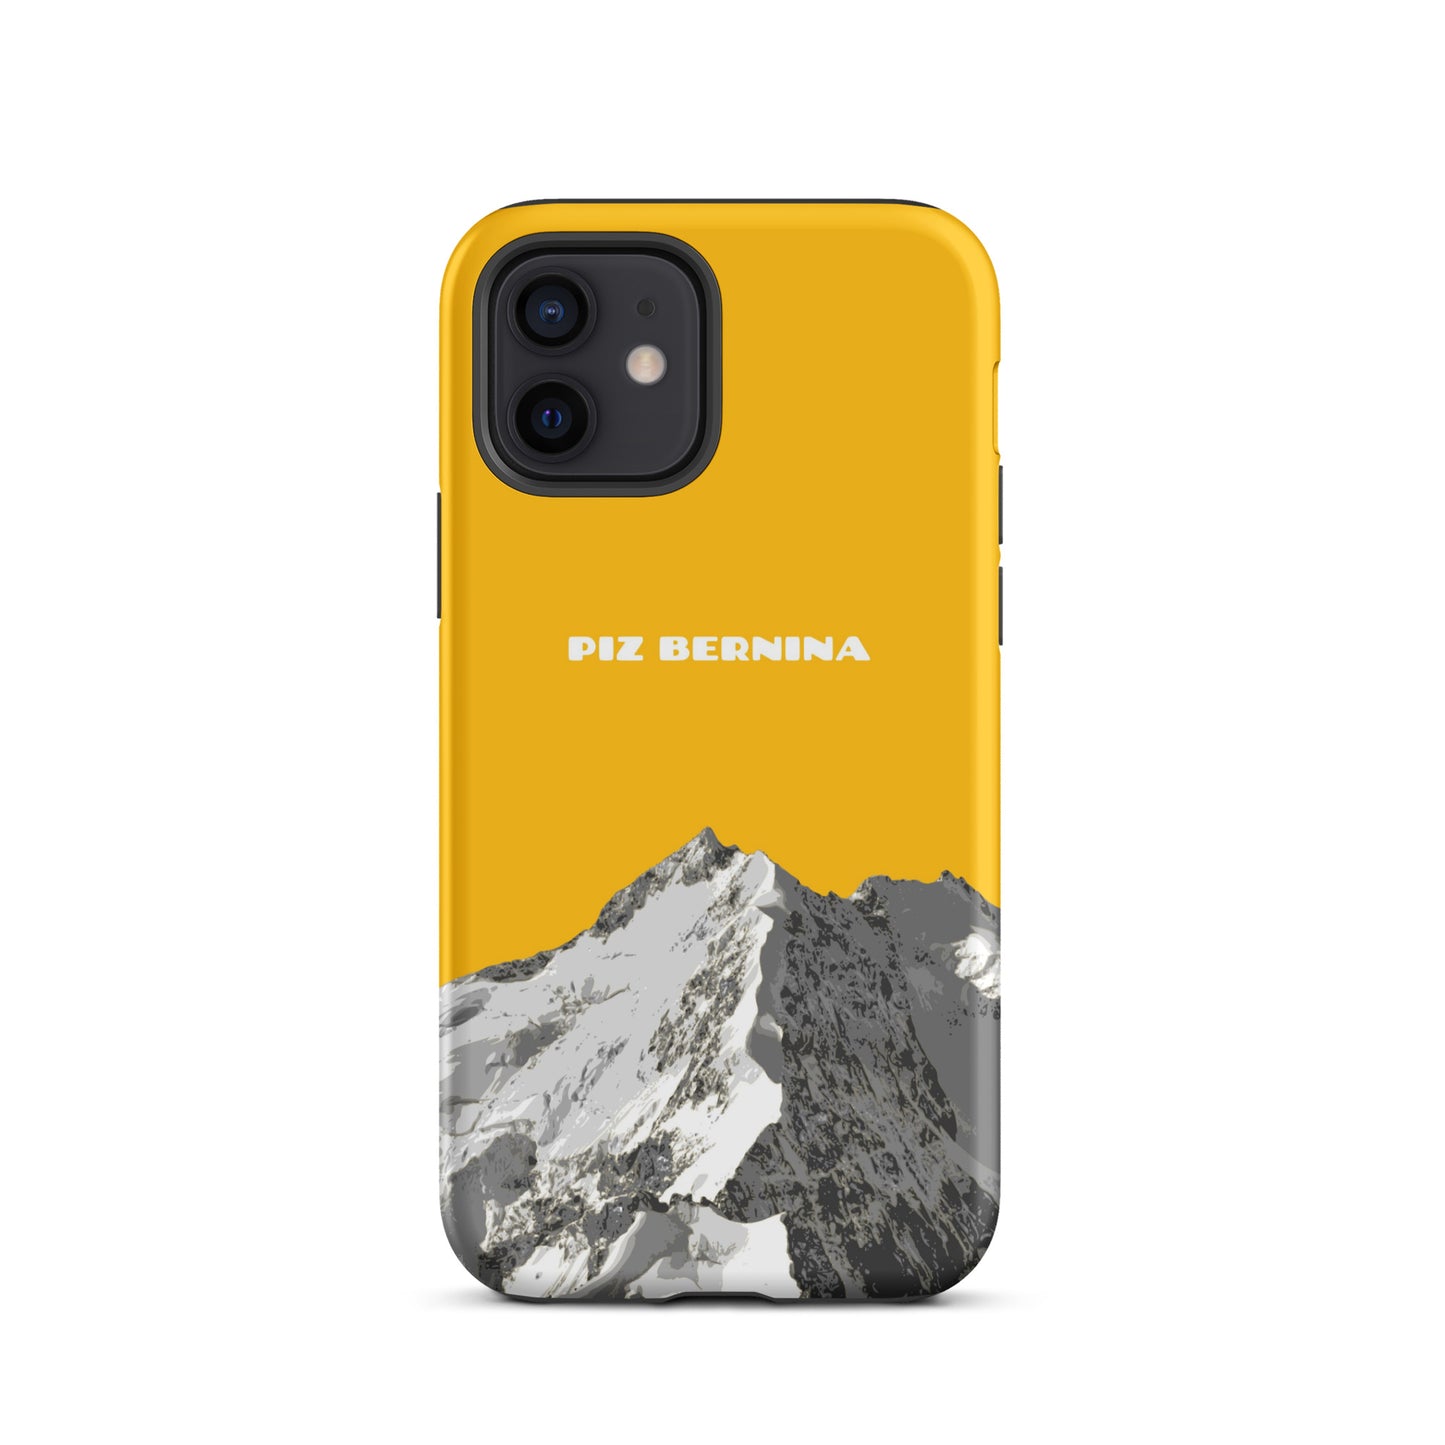 Hülle für das iPhone 15 Plus von Apple in der Farbe Goldgelb, dass den Piz Bernina in Graubünden zeigt.